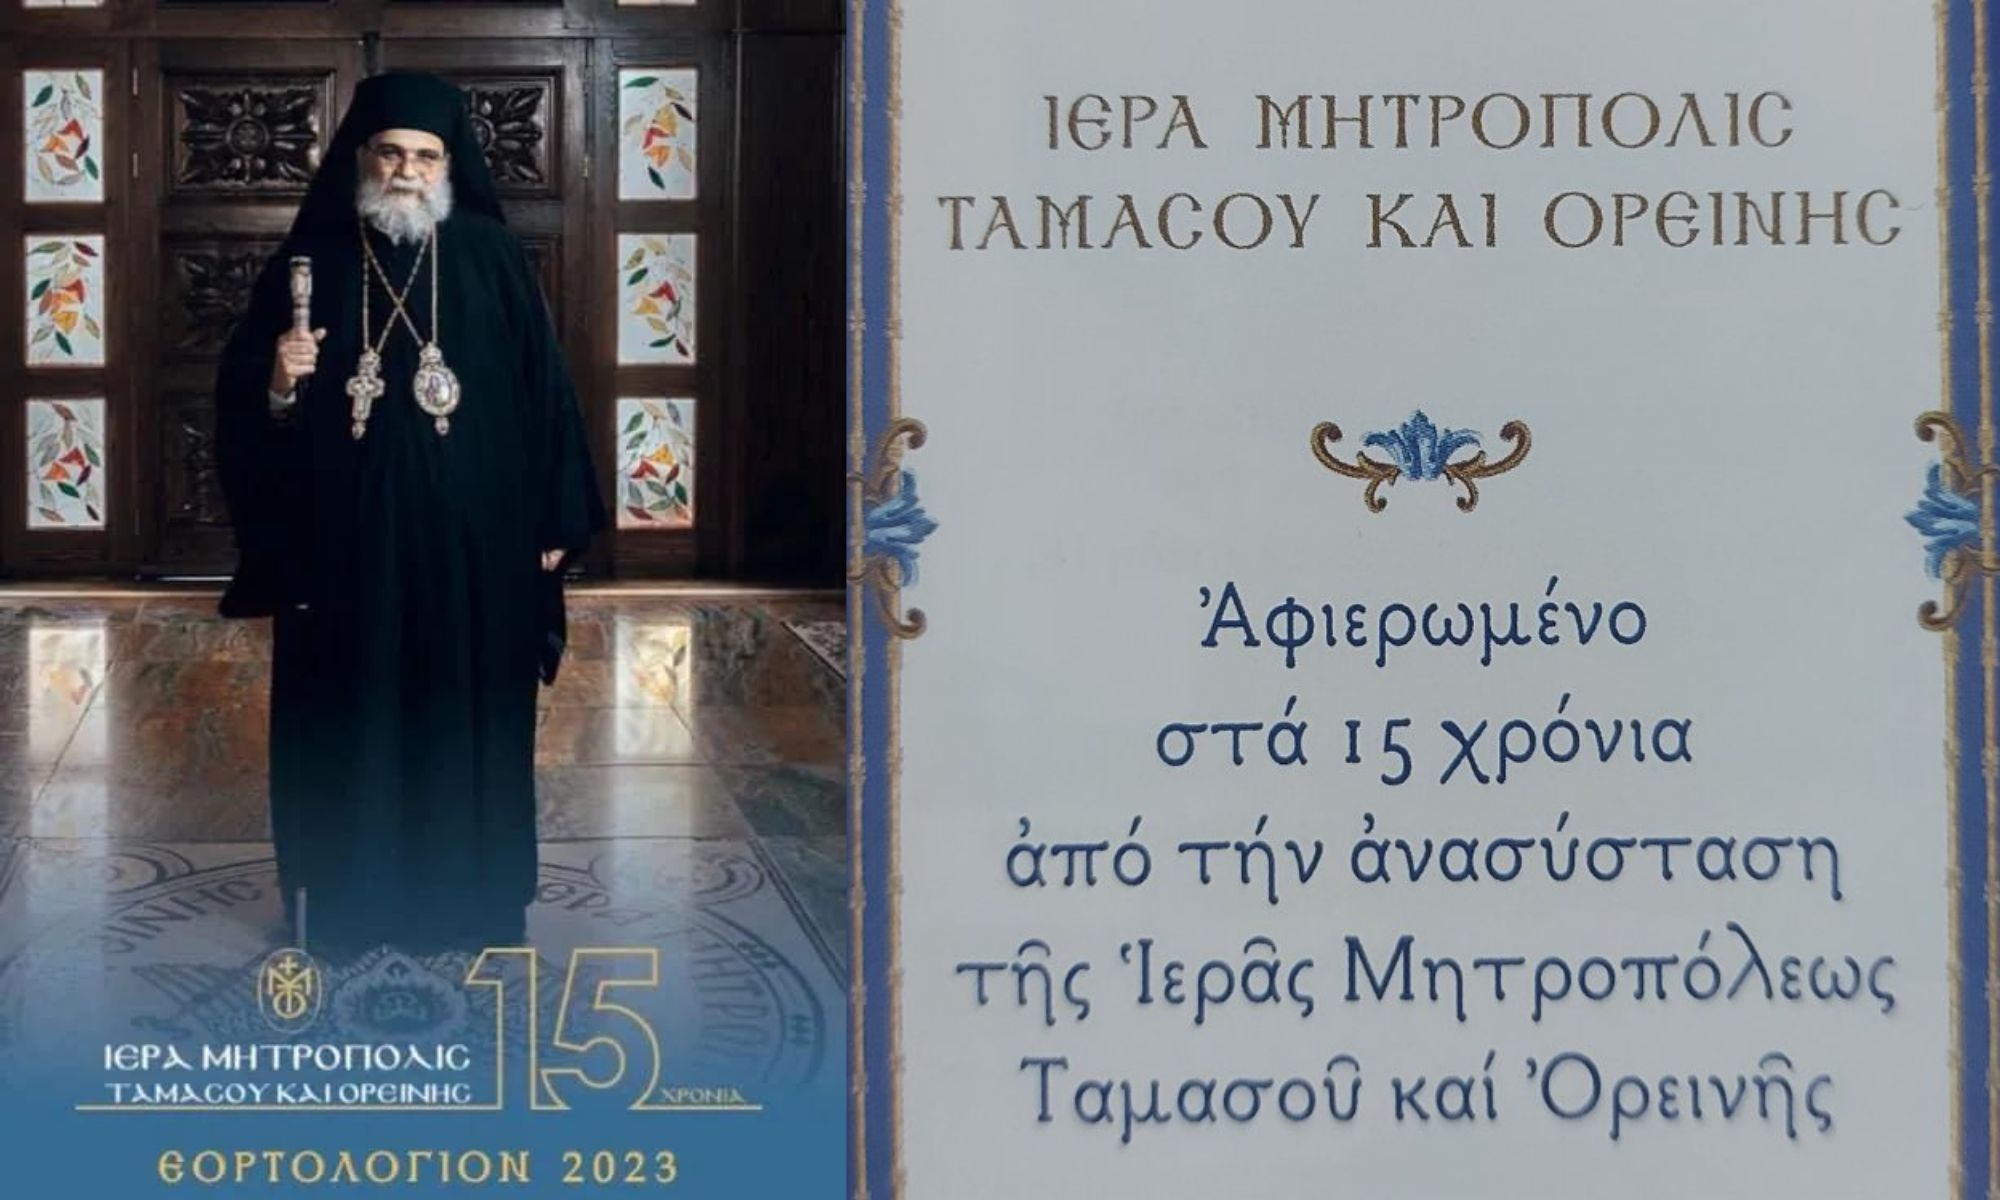 Ιερά Μητρόπολη Ταμασού: Εξέδωσε ημερολόγιο αφιερωμένο στα 15 χρόνια από την ανασύσταση της